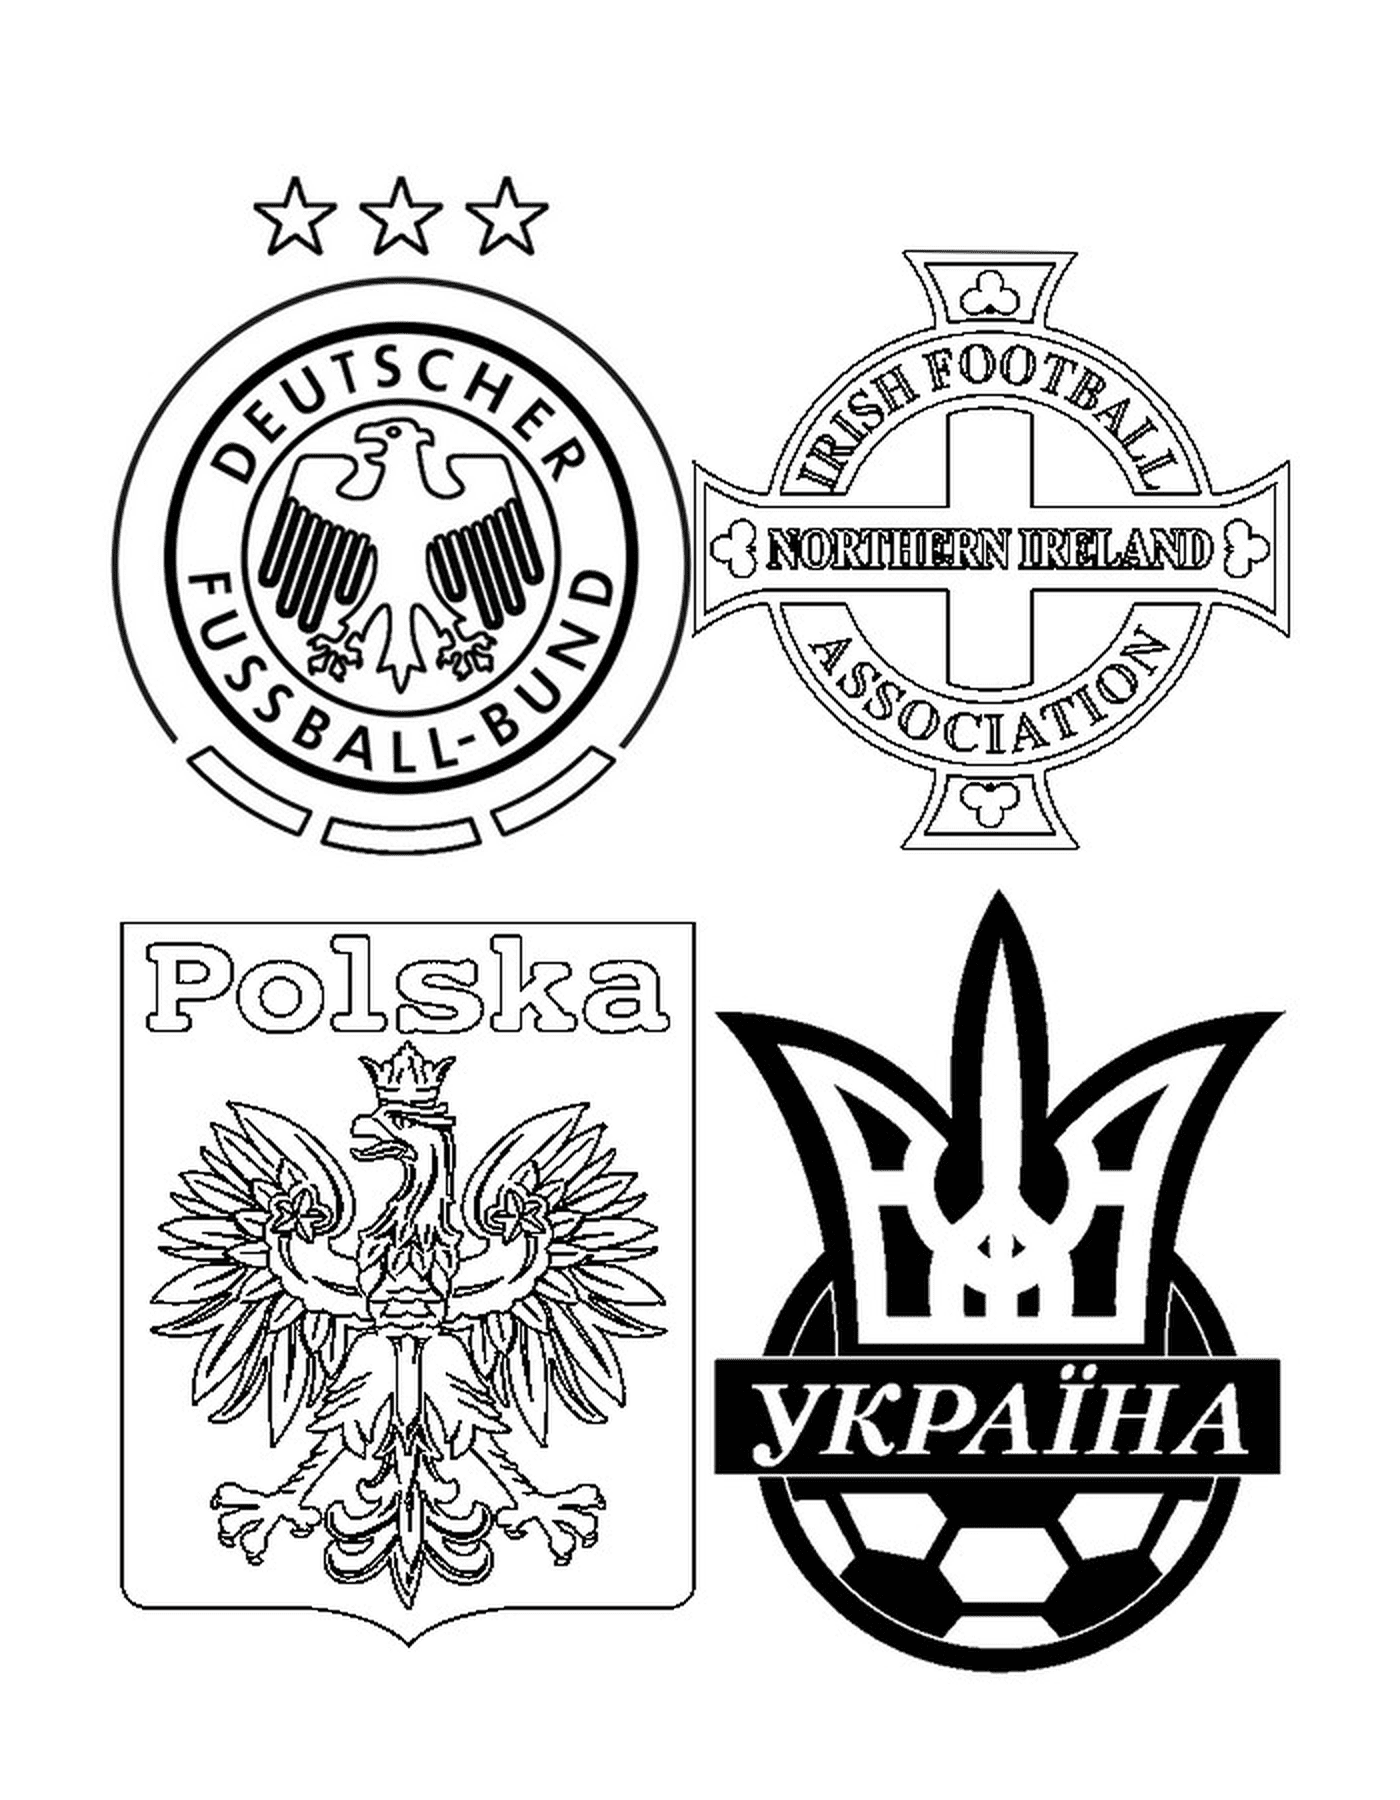  Cuatro logos de equipos de fútbol, uno de ellos tiene una cruz 